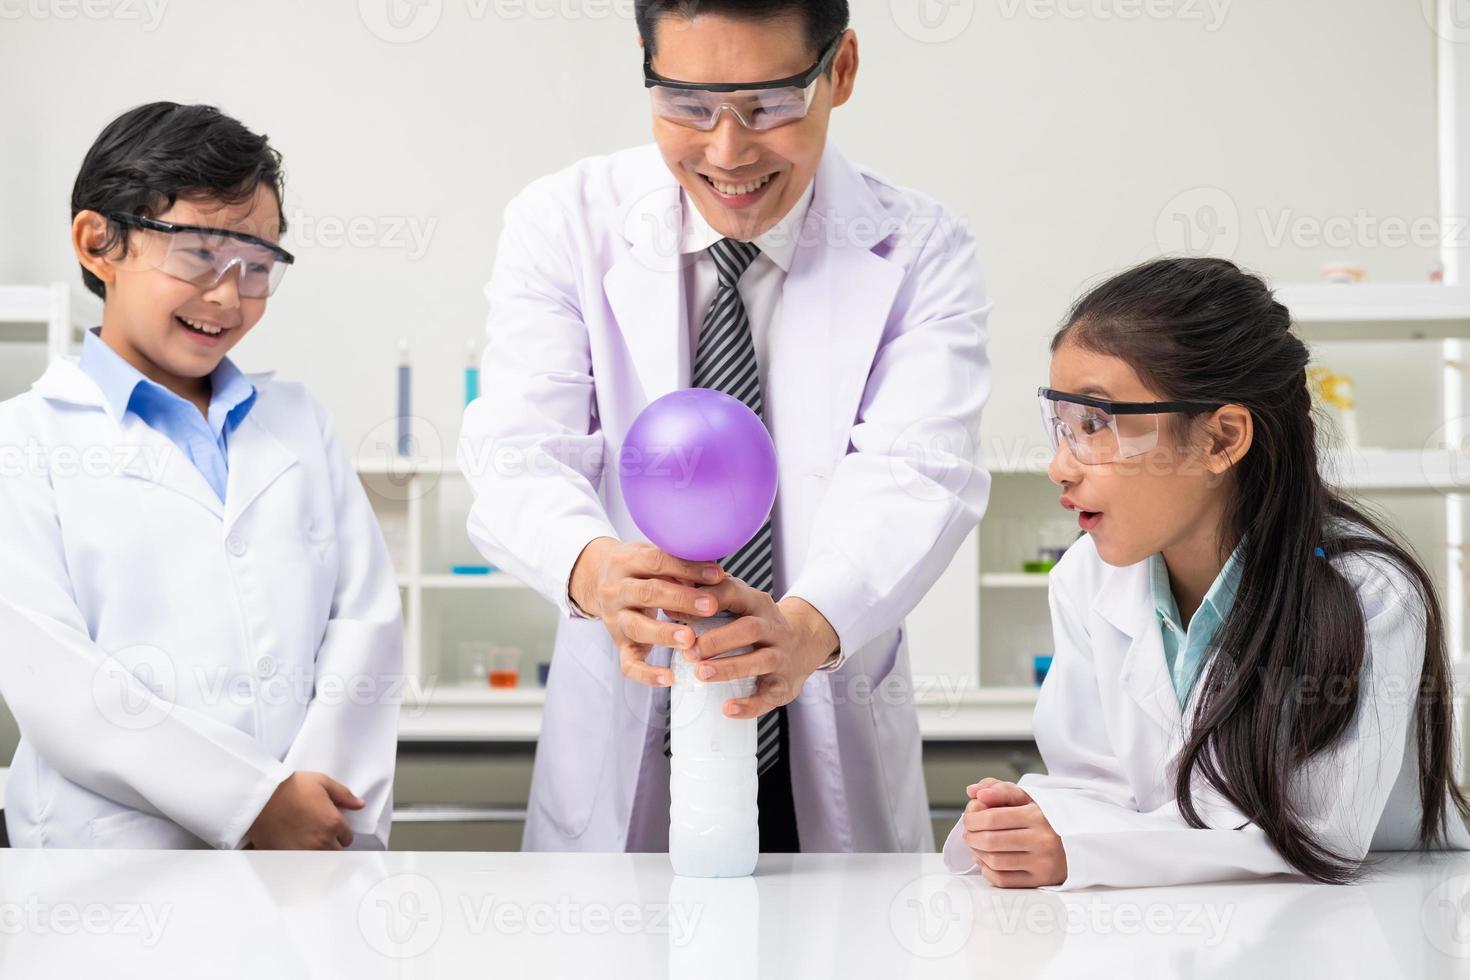 jovens crianças asiáticas vestindo vestido branco de cientista e fazem tubo de ensaio químico enquanto estudam, aprendendo na sala de aula de ciências com o professor. conceito de educação de crianças pequenas por experimento, diversão e diversão em sala de aula foto